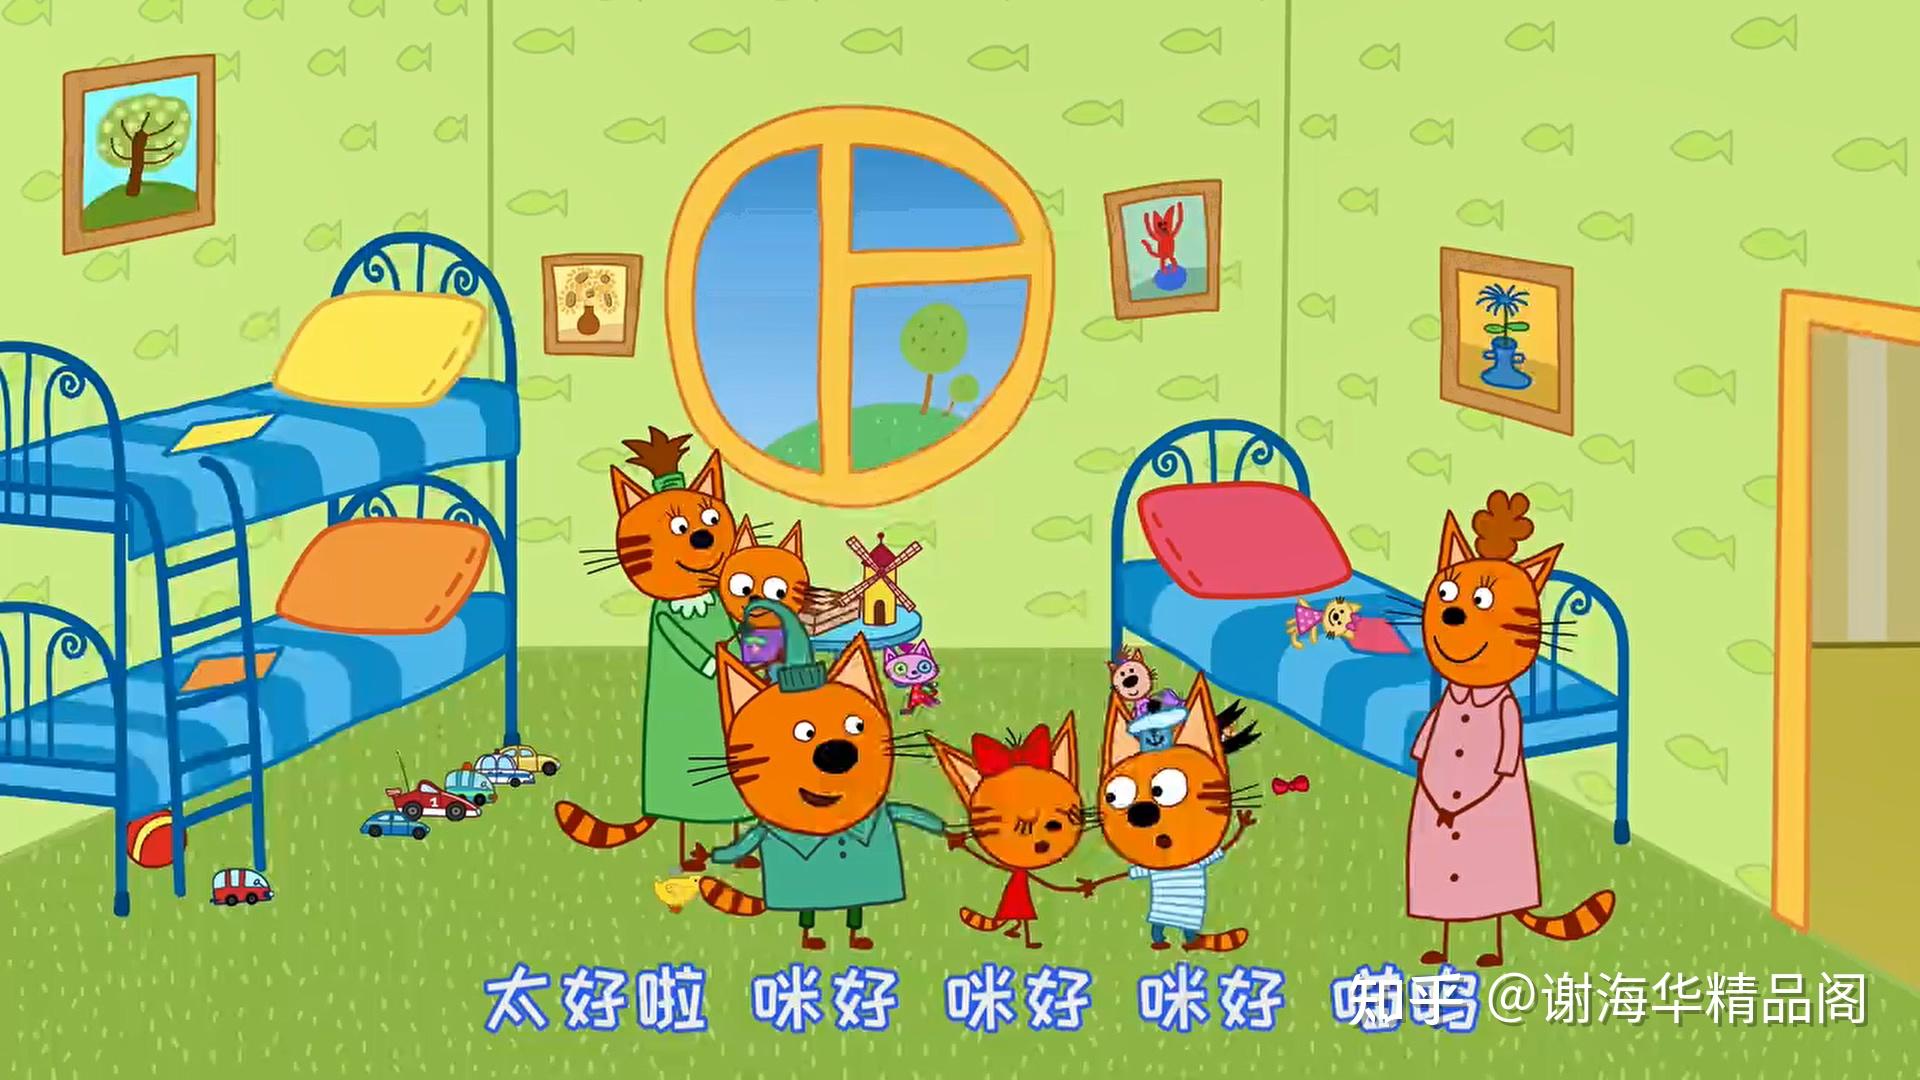 咪好一家kidecats英文版第一季第二季104全集高清1080pmp4带中文字